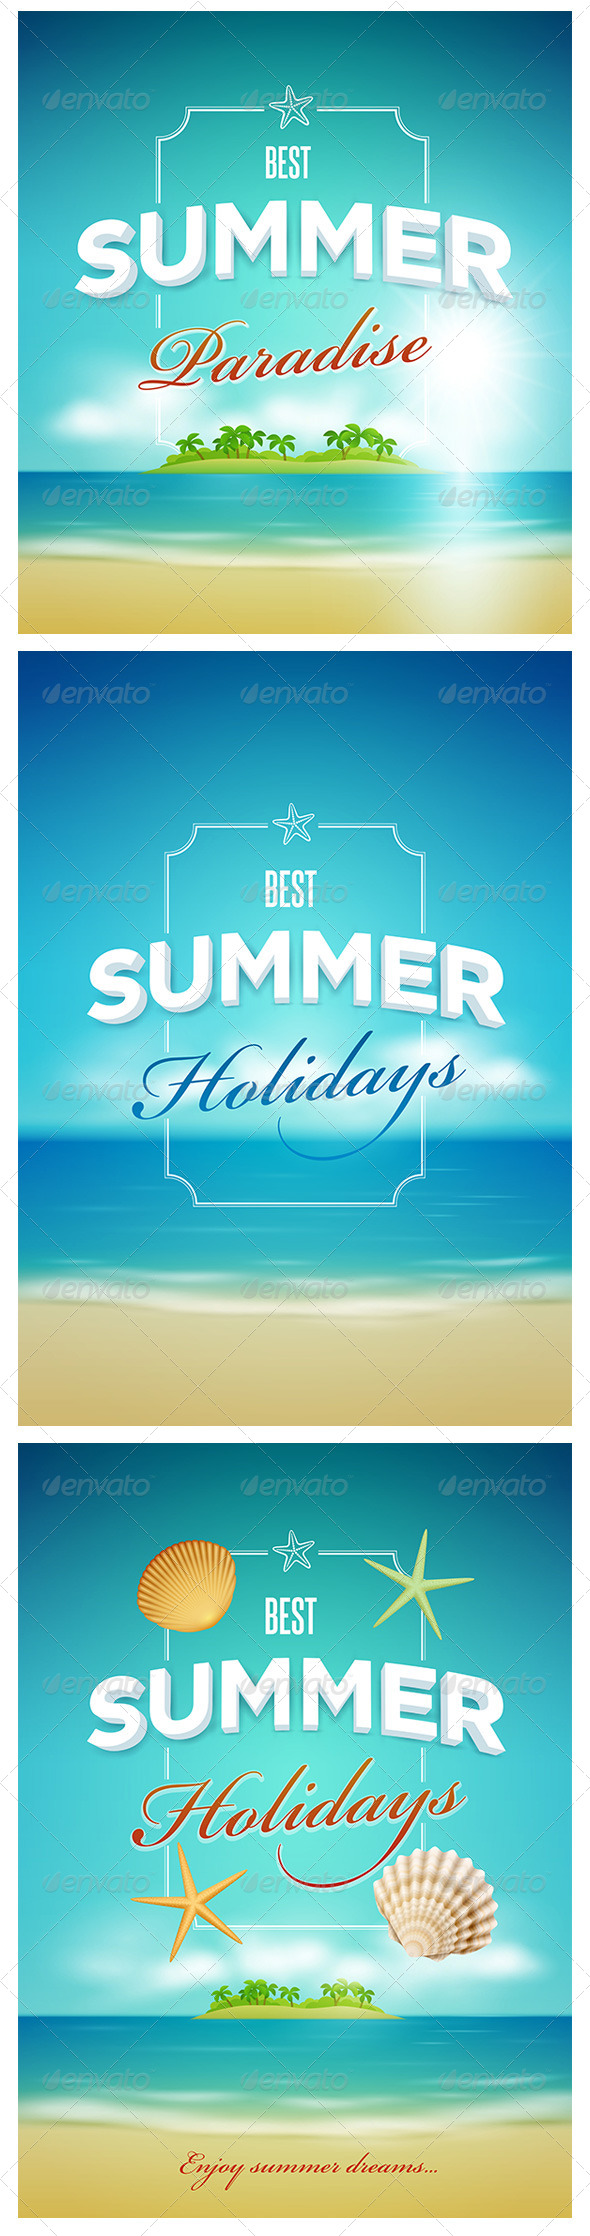 GraphicRiver Summer Poster Design Set 7830475